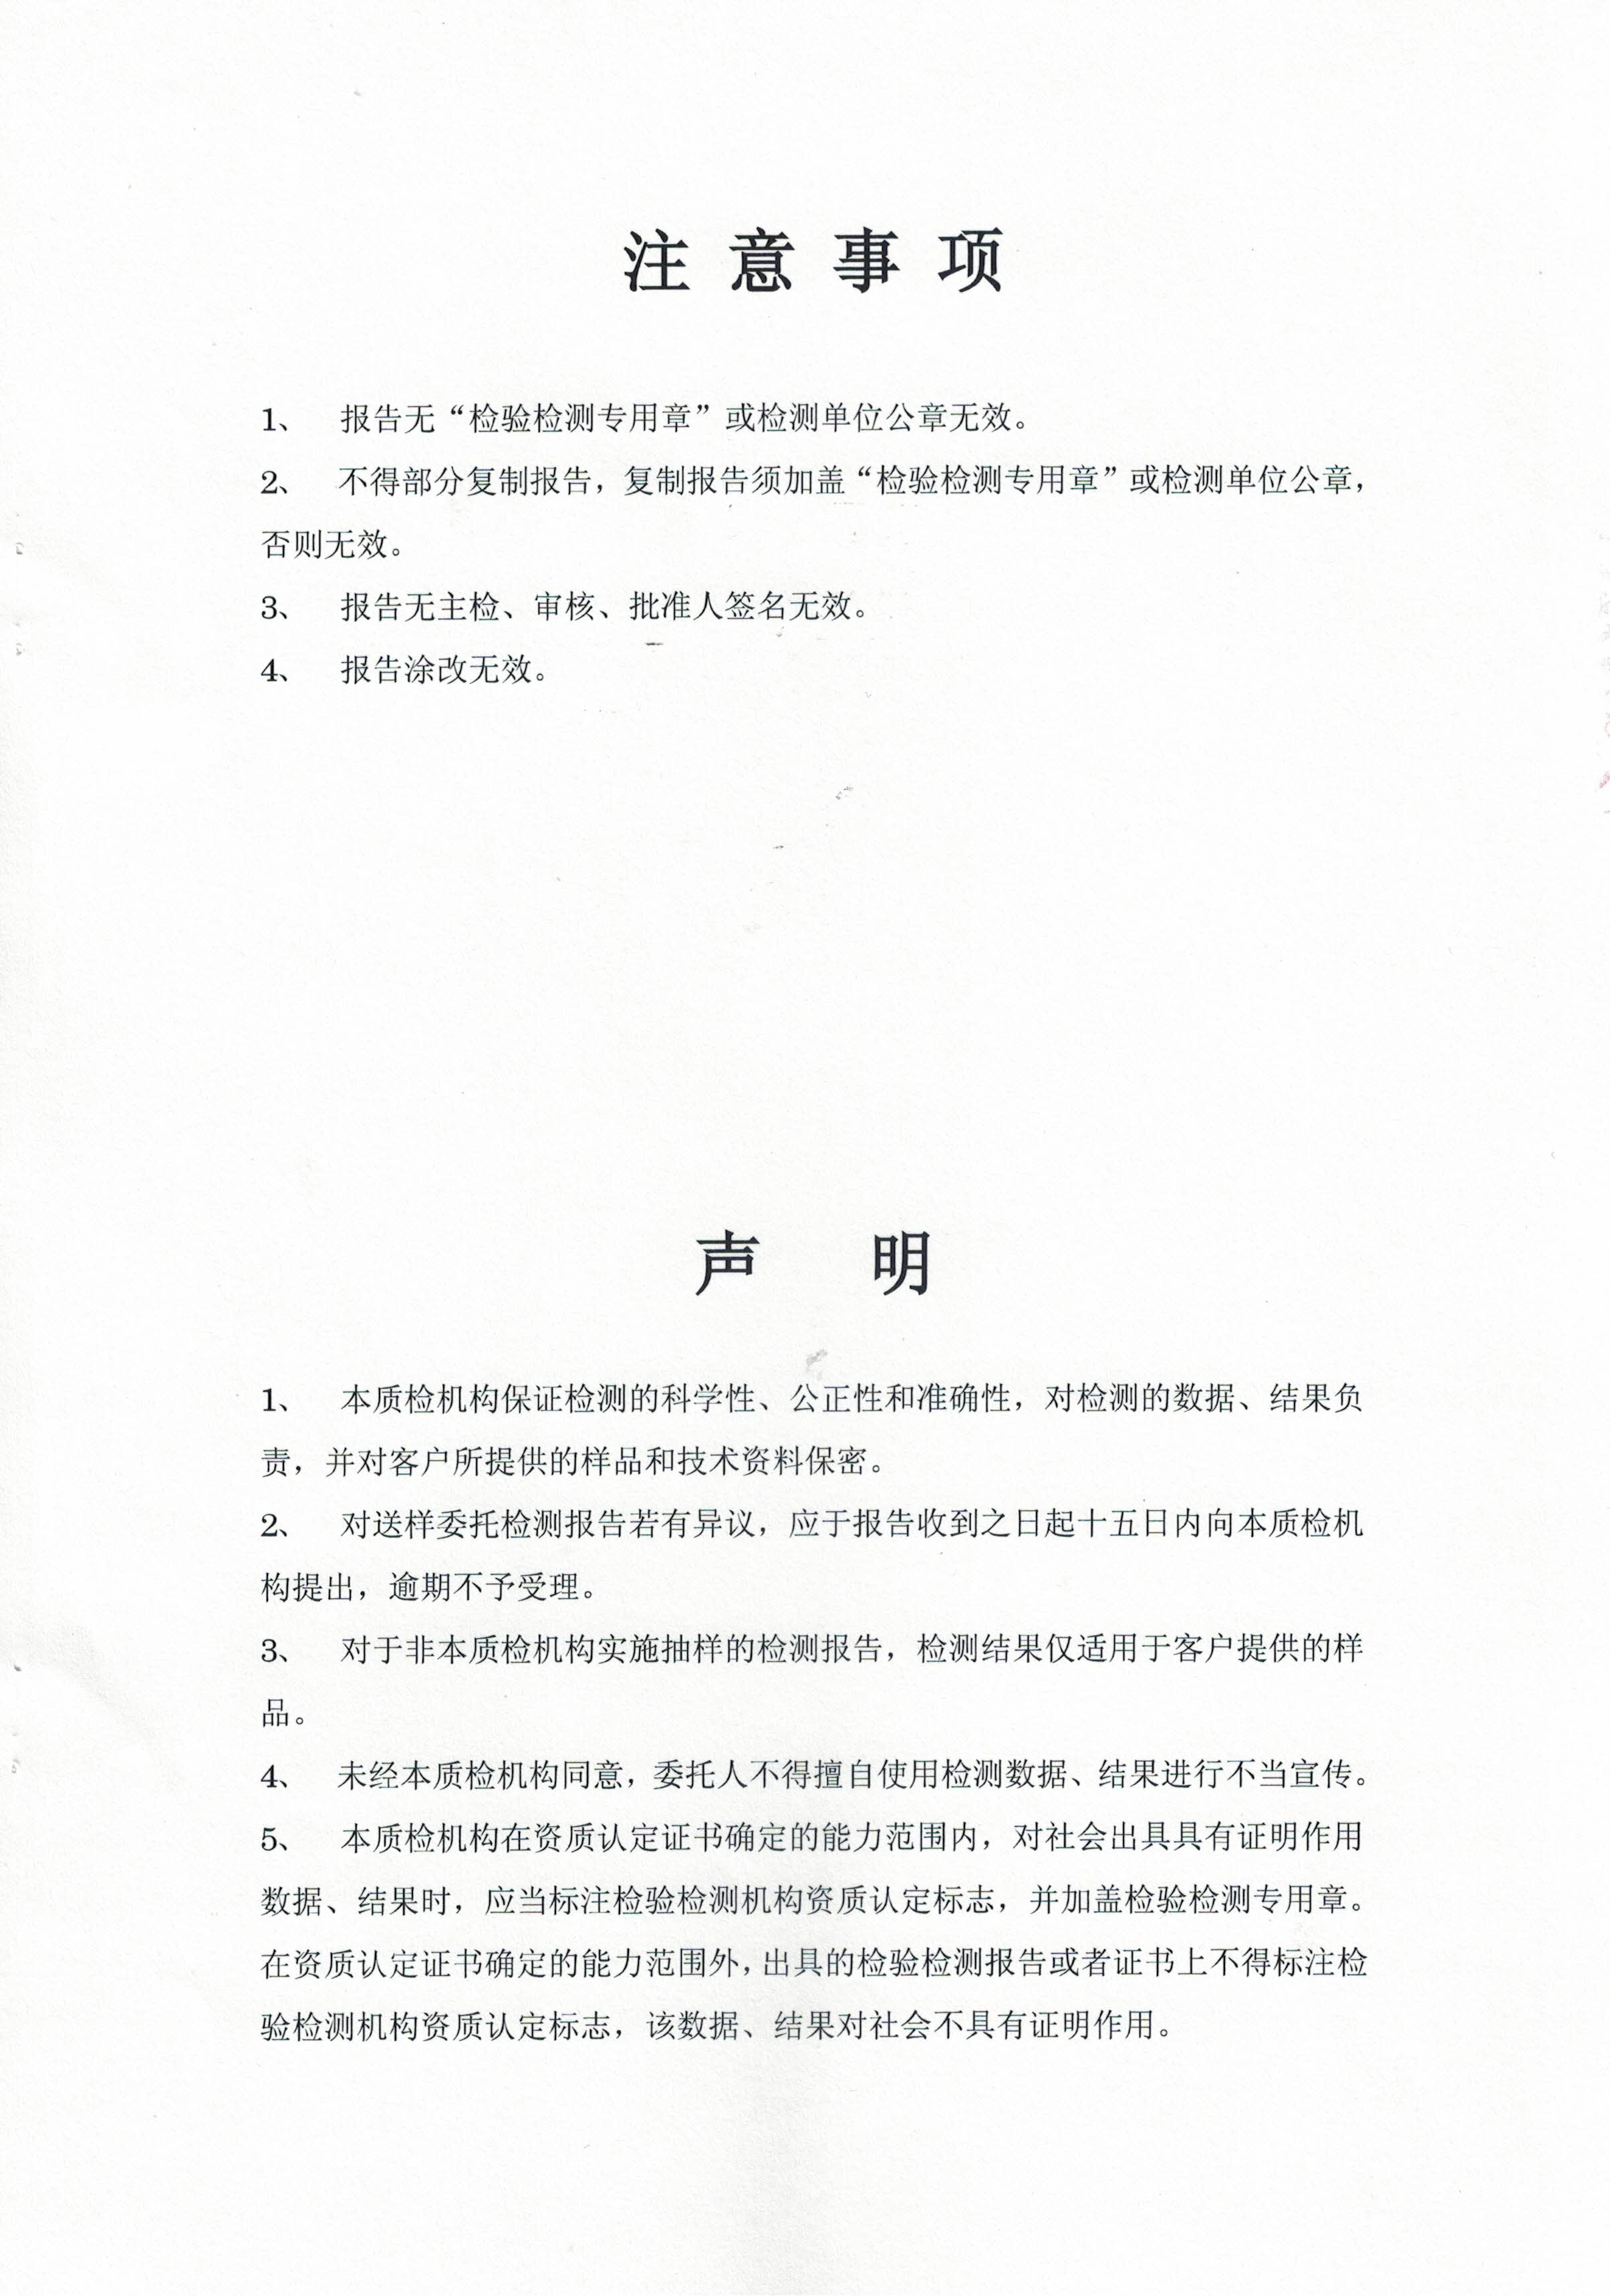 2020年4月24日 大汉灵芝菌丝体 重金属含量检测报告5